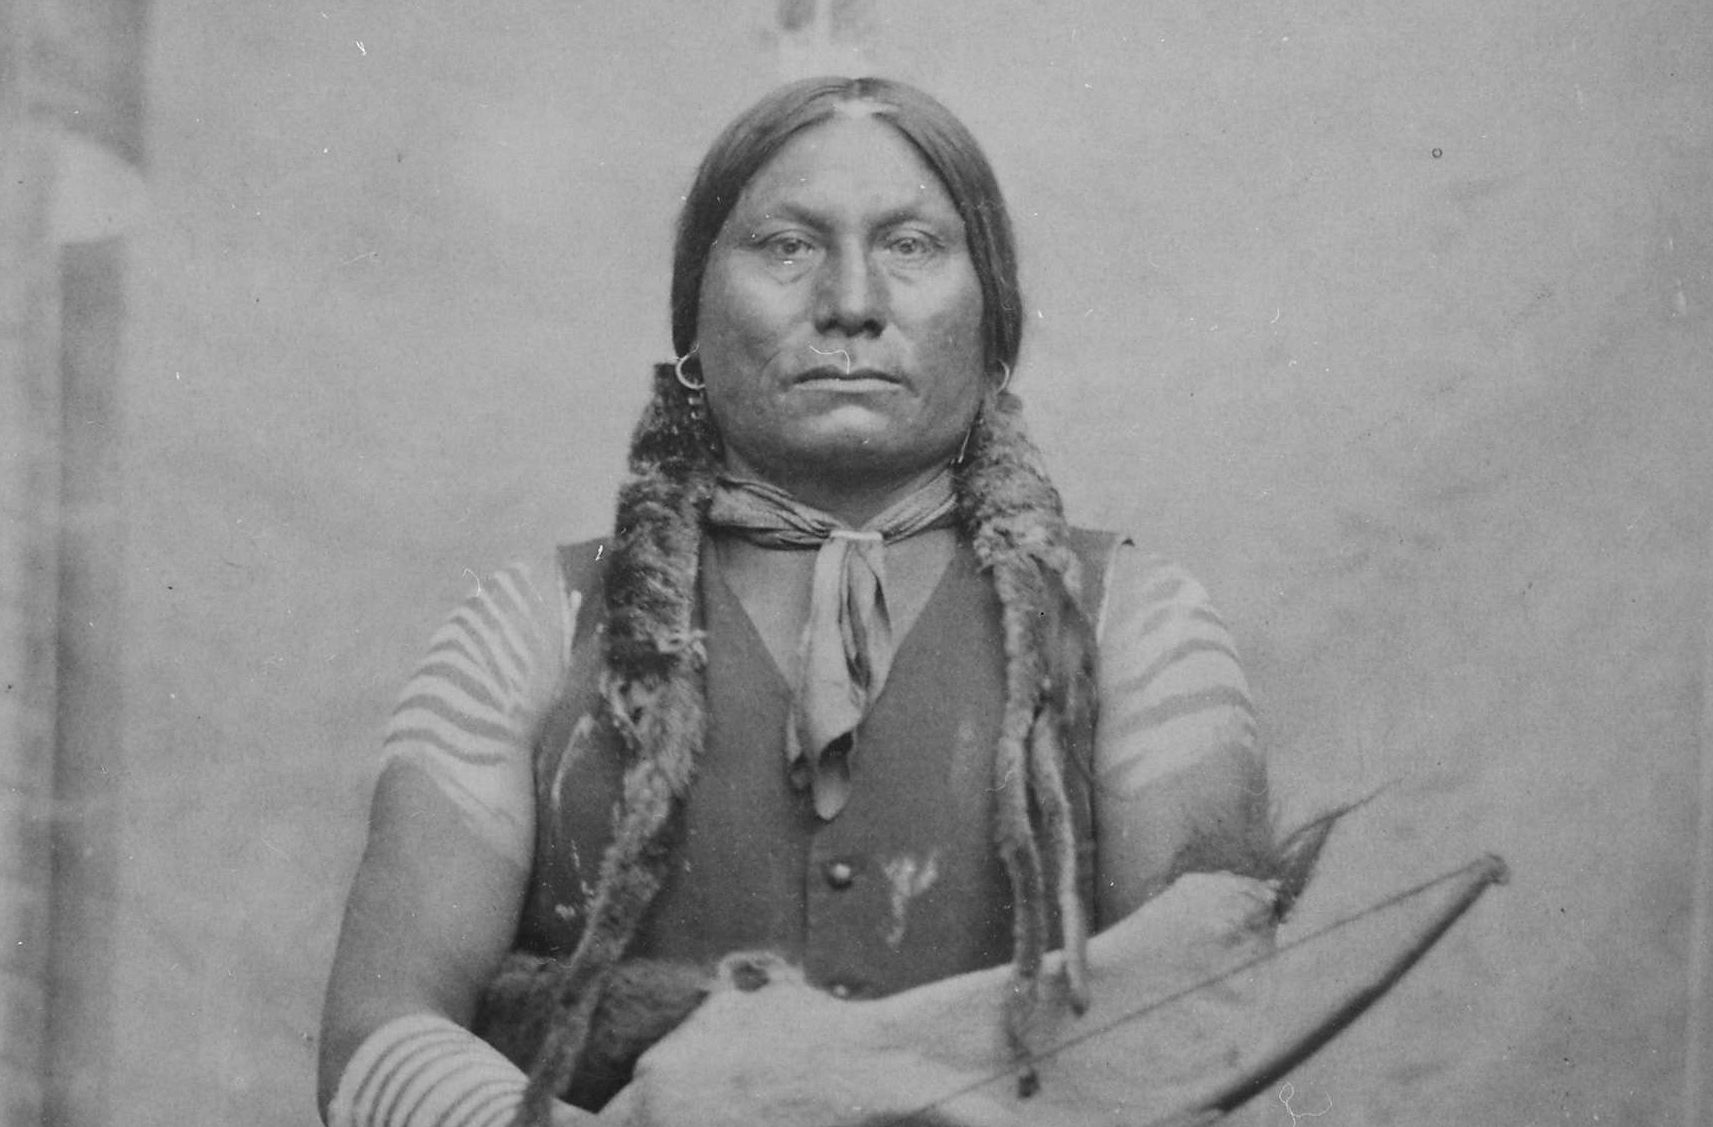 Gaul, Sioux Leader